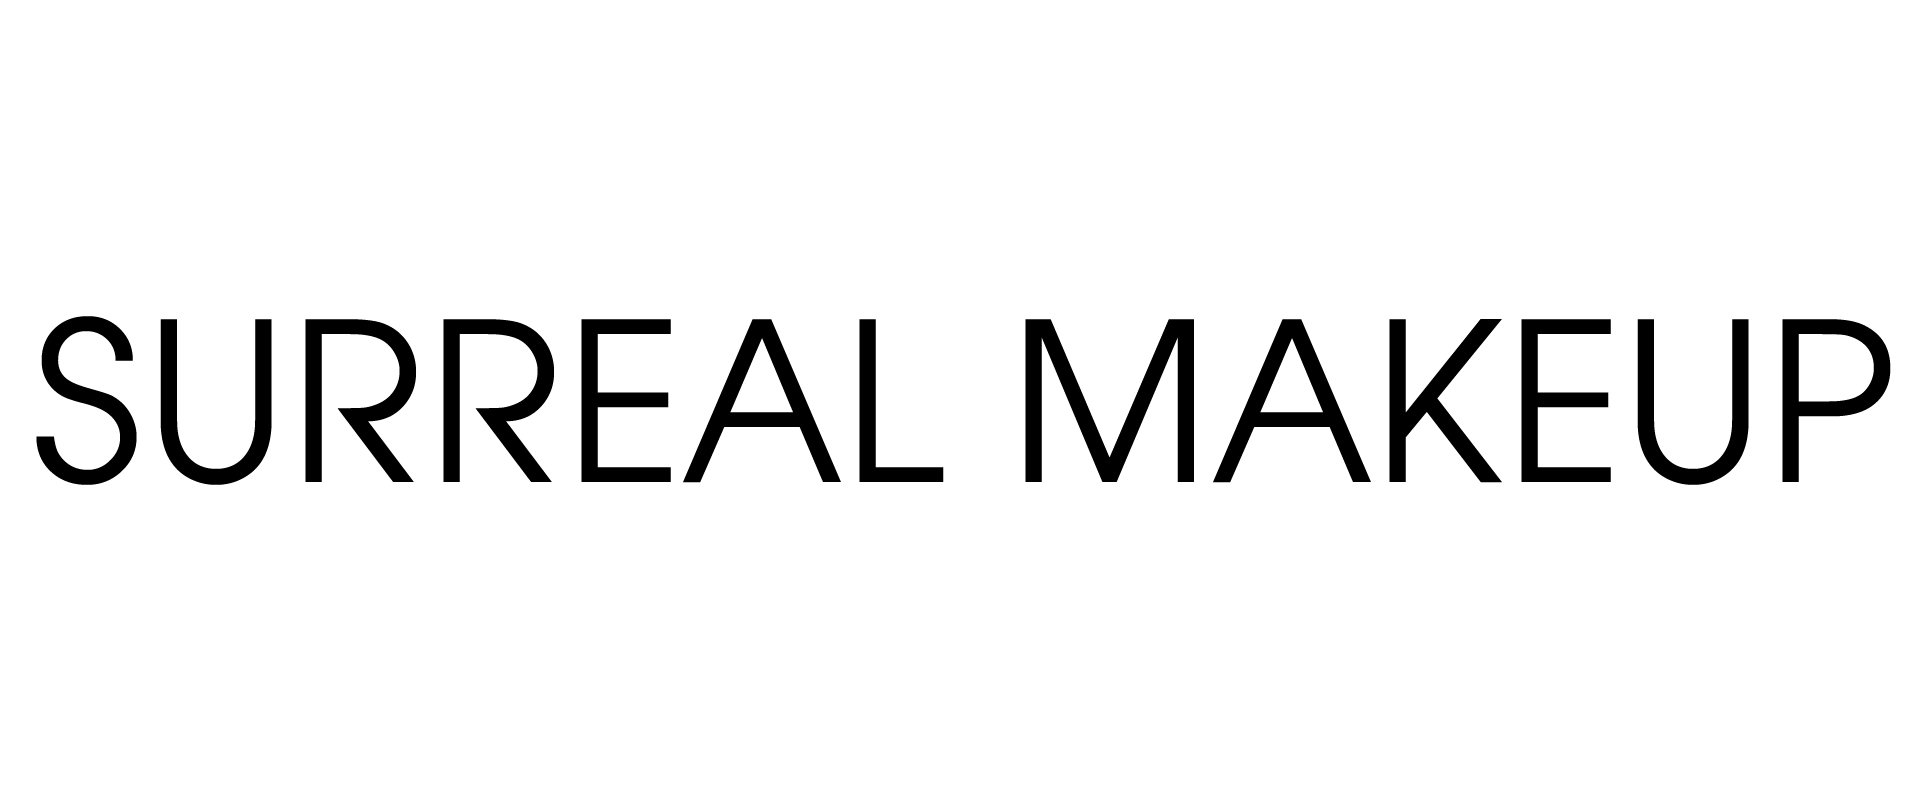 Surreal Makeup Text Logo (Black)